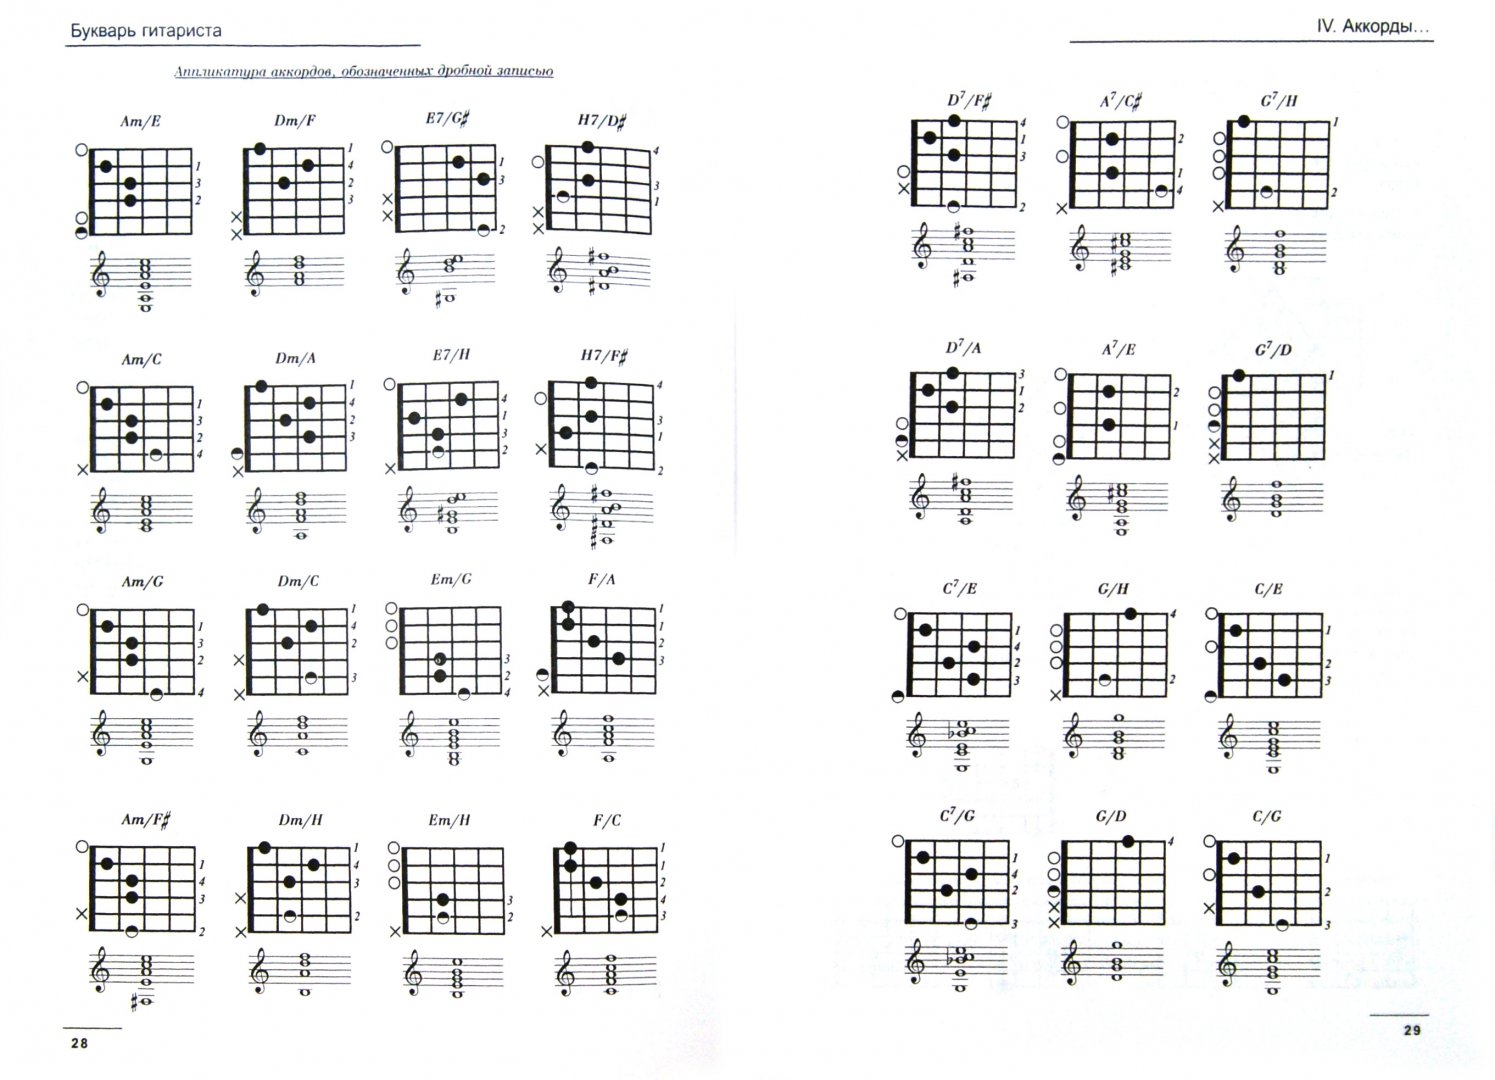 4 аккорда для начинающих. Схемы аккордов. Аккорды для гитары шестиструнной. Аппликатура аккордов для гитары. Таблица аккордов для гитары.